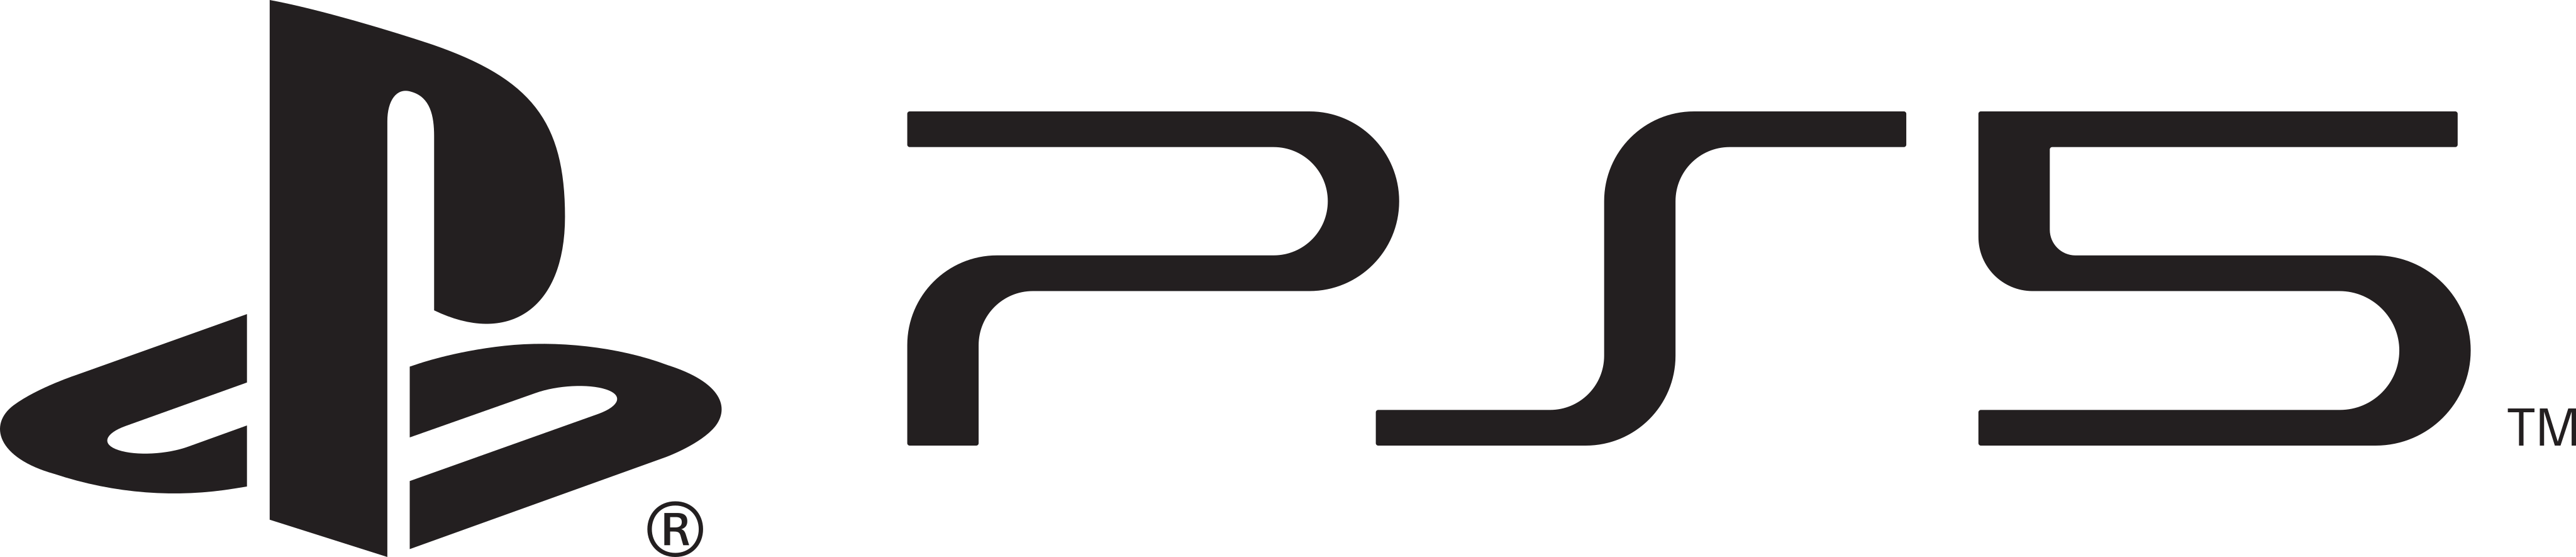 PS5 Logo - PlayStation 5 Logo - PNG and Vector - Logo Download